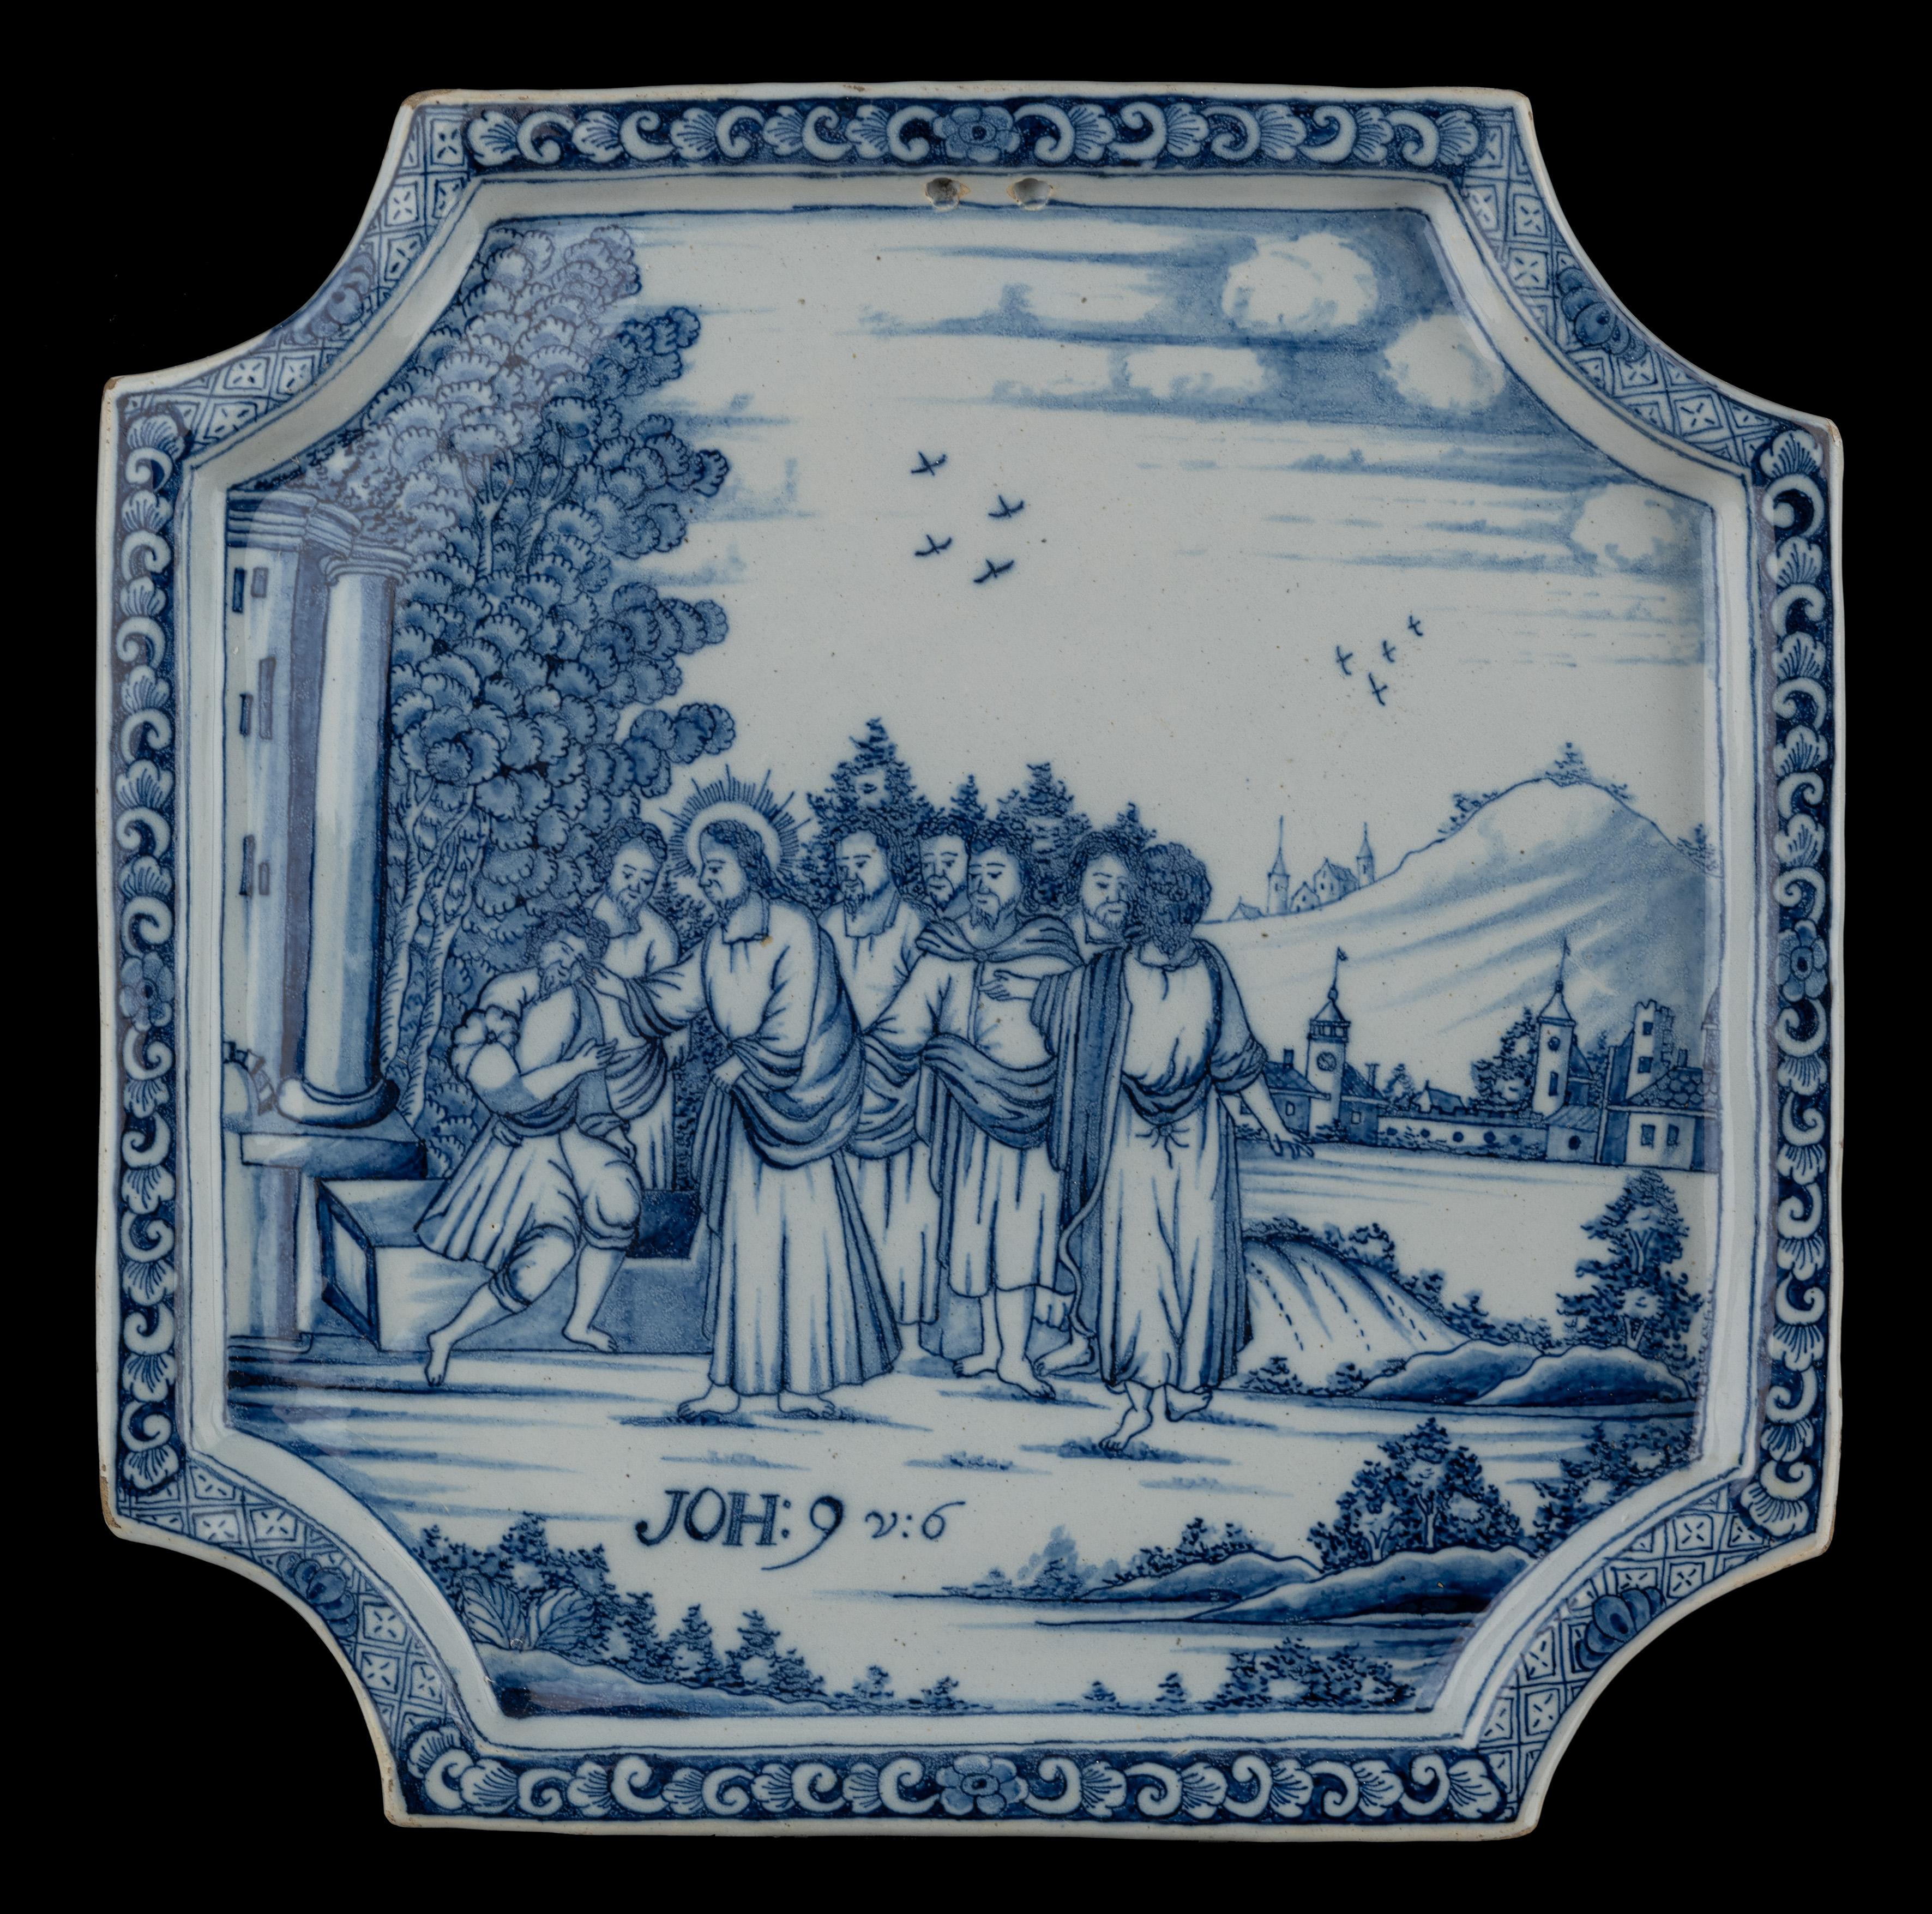 Plaque biblique bleue et blanche. Delft, 1740-1760 

La plaque carrée a des coins dentelés, un bord plat en relief et est peinte en bleu avec un décor biblique  dans un paysage vallonné.  L'inscription biblique Jean 9 v.I.6 figure au premier plan.